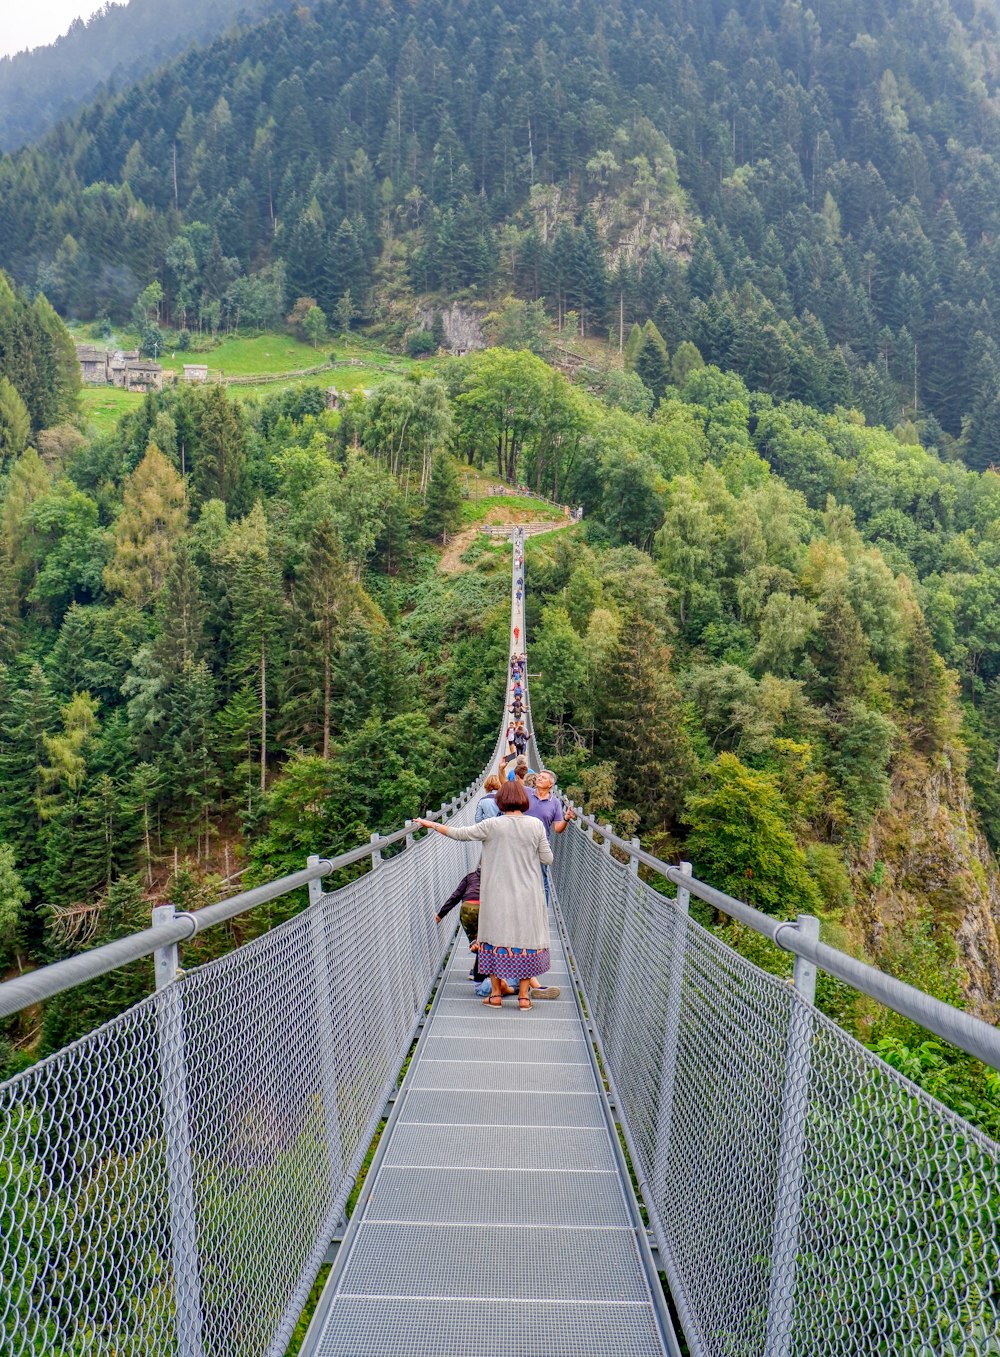 people walking on hanging bridge over green trees during daytime